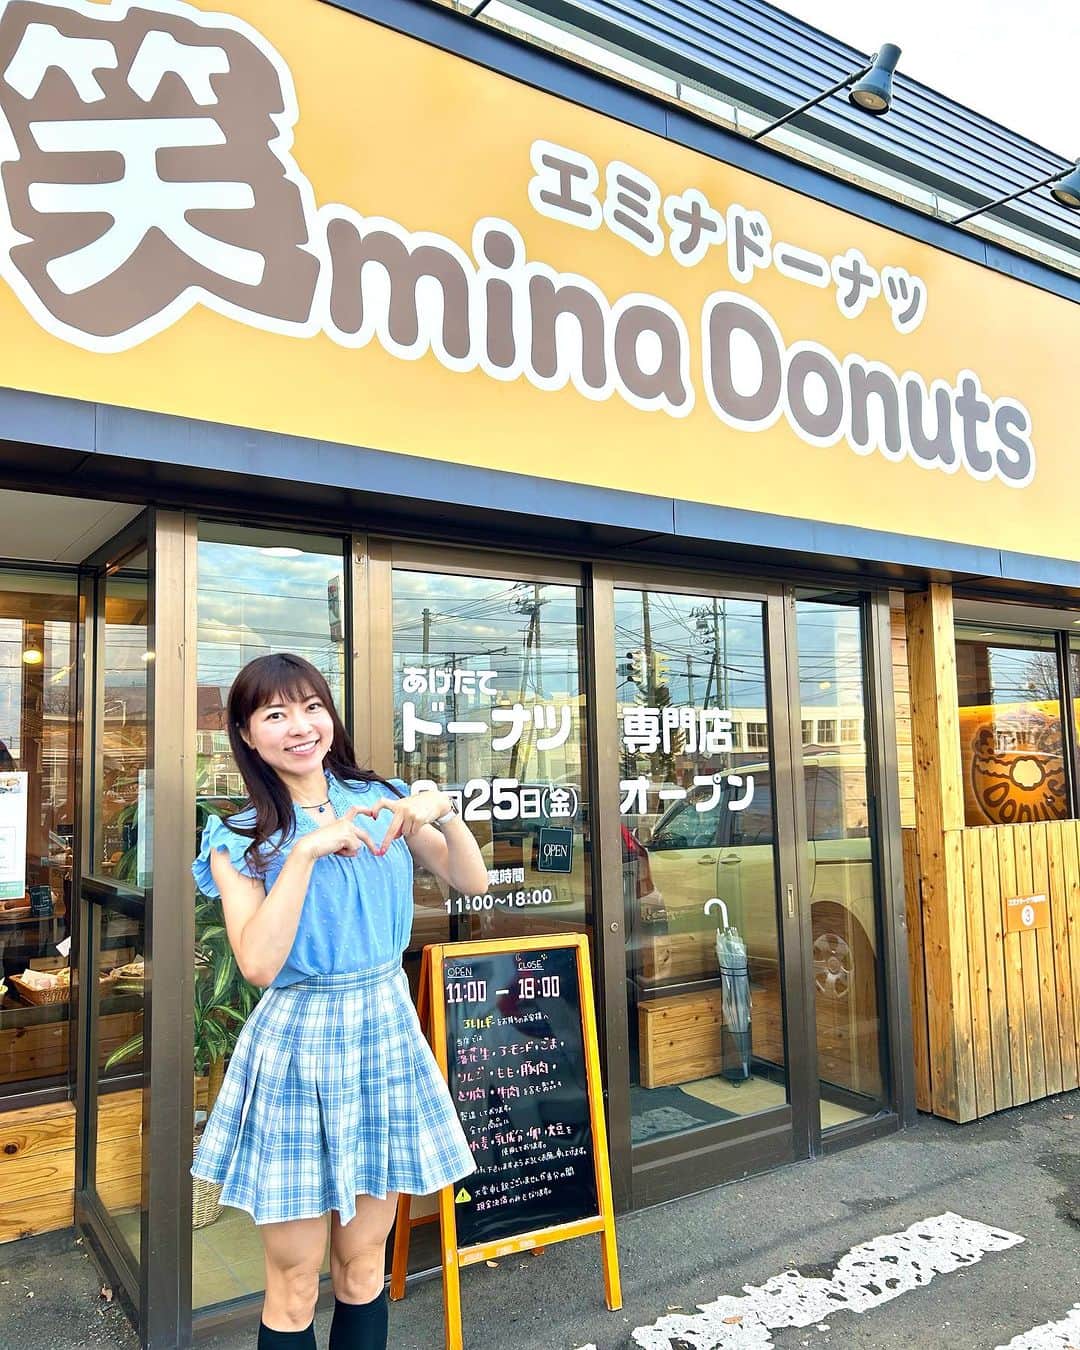 DJ MIYAのインスタグラム：「みんなきゃっほーぉぉ💕昨日は車で三井アウトレットモール札幌店にいくまえにすぐ近く、北広島に今年8月Openした 『笑mina Donuts』さんに行ってきましたぁぁ❤️（エミナドーナツ）  道路沿いにあって目立つ看板と建物がすぐにわかりました🎀  全てお店で揚げたてで沢山の種類にウワーッってすごぉい♡♡ いいにおいドーナツ🍩🍩  PR @emina_donuts  各エリアに並べられたできたてのドーナツのラインナップすごい〜広い店内を見るだけでも楽しくなるよ❤️  【生クリームの生ドーナツ】は４種類食べてみたんだけど『ピスタチオ』が特に気に入ったよ💕すごぉいクリームとふわふわーっ&もちもちぃとしたドーナツ生地がめっちゃ美味しいの^_^  【クロワッサンドーナツ】は軽めだけどしっとりと仕上がった極上ドーナツ。カスタードとチョコレートもあってどちらもおすすめ！  『明太ポテト』は 午後のおやつにMomとお家で楽しみました。 すごぉぉい！中の具もすごく美味しいしドーナツ生地とよく合うぅおいちっ幸せですうう˚✧₊⁎❝᷀ົཽ≀ˍ̮ ❝᷀ົཽ⁎⁺˳✧༚  宝永の餃子カレーパンもideaがすごい！こんなの初めて💕  オールドファッションも食べていてほっとする優しい味で  沖縄ドーナツサーターアンダギーが札幌で買えるのって嬉しいよね🎵  もうぜんぶ美味しくて全部50種類あるそうなのでこちらが特におすすめ^_^  みんな行ってみてね♡  ありがとうございましたぁぁ❤️  ◉営業時間: 11:00～18:00  website http://www.foodsandbread.co.jp  北海道北広島市大曲南が丘２丁目1-6  #笑minadonuts #ドーナツ専門店 #北海道ドーナツ #北広島スイーツ #北広島グルメ #北広島 #えみなドーナツ #大人気 #スイーツ #ドーナツ #クリームドーナツ #クロワッサンドーナツ  #トリドリベース　#ドーナッツ #ドーナツ女子 #スイーツ女子 #旅ブロガー #タビジョ #旅インフルエンサー #北海道旅行 #北海道 #札幌 #札幌大曲 #ドライブ旅行 #札幌ドーナツ #札幌スイーツ #札幌グルメ #札幌カフェ #グルメインスタグラマー #インフルエンサー」